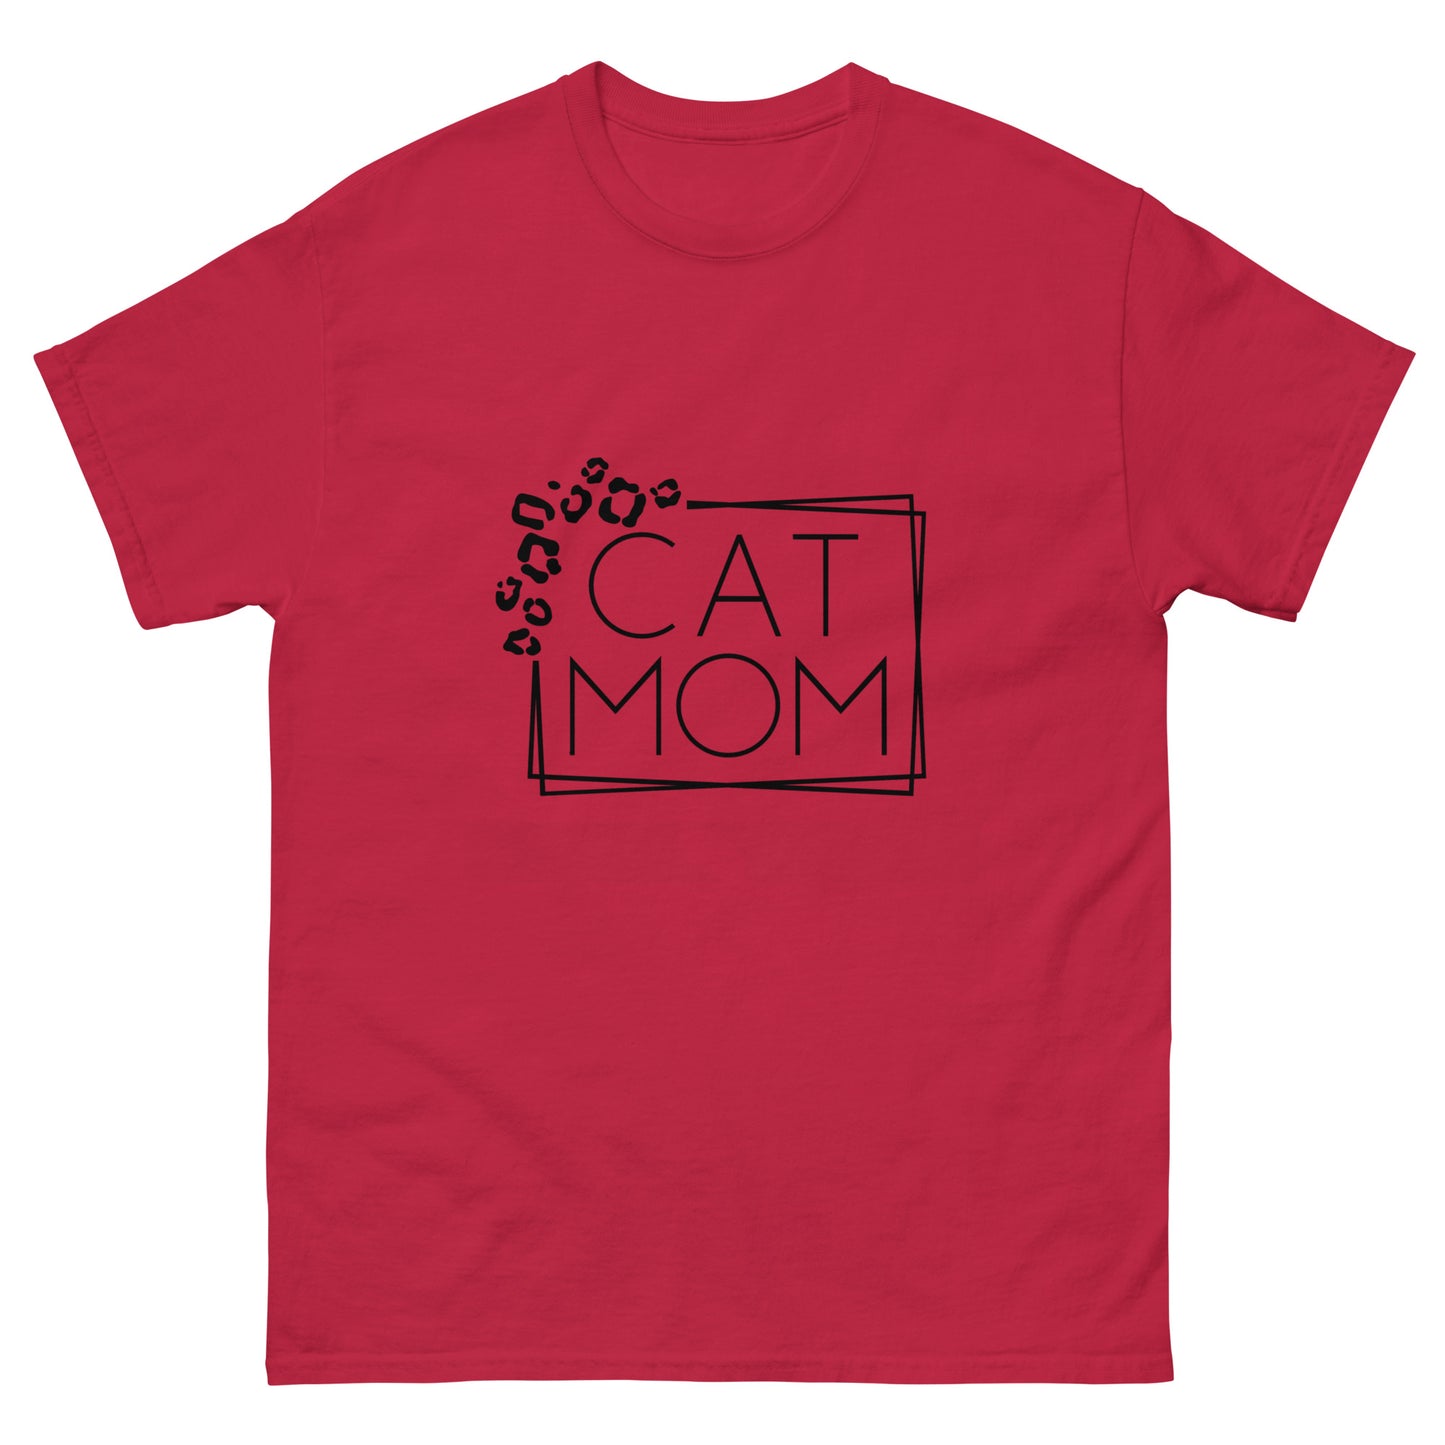 Cat Mom - classic tee